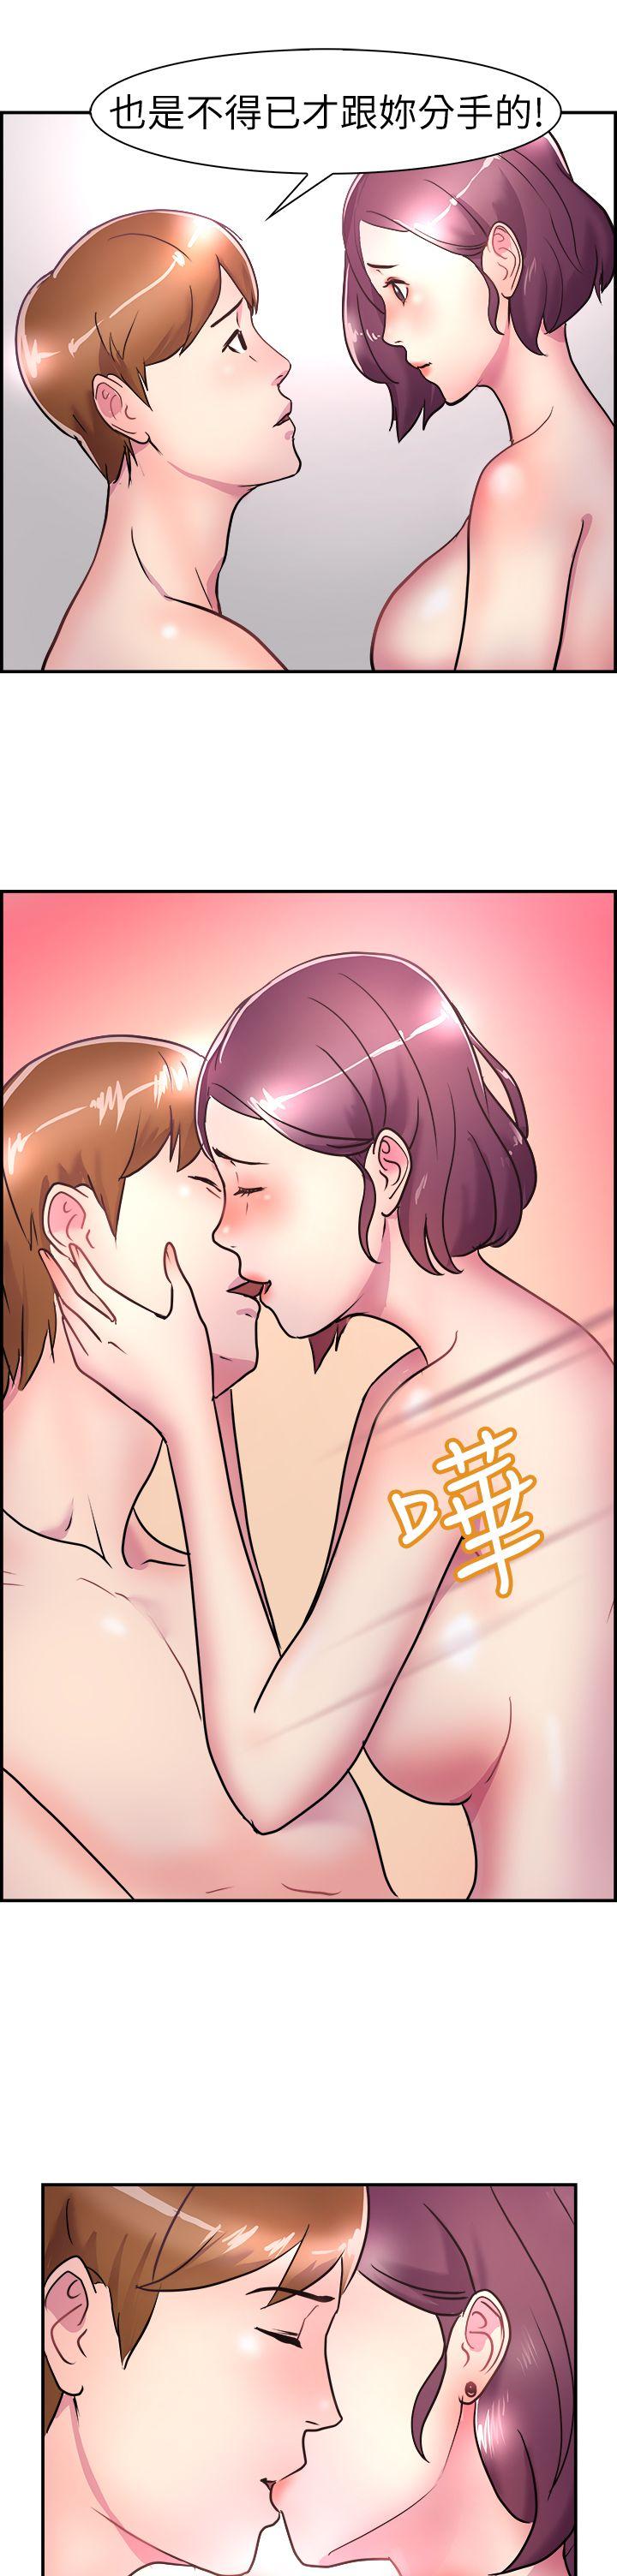 韩国污漫画 前男友前女友 第6话在夏日海边巧遇前女友(下) 9